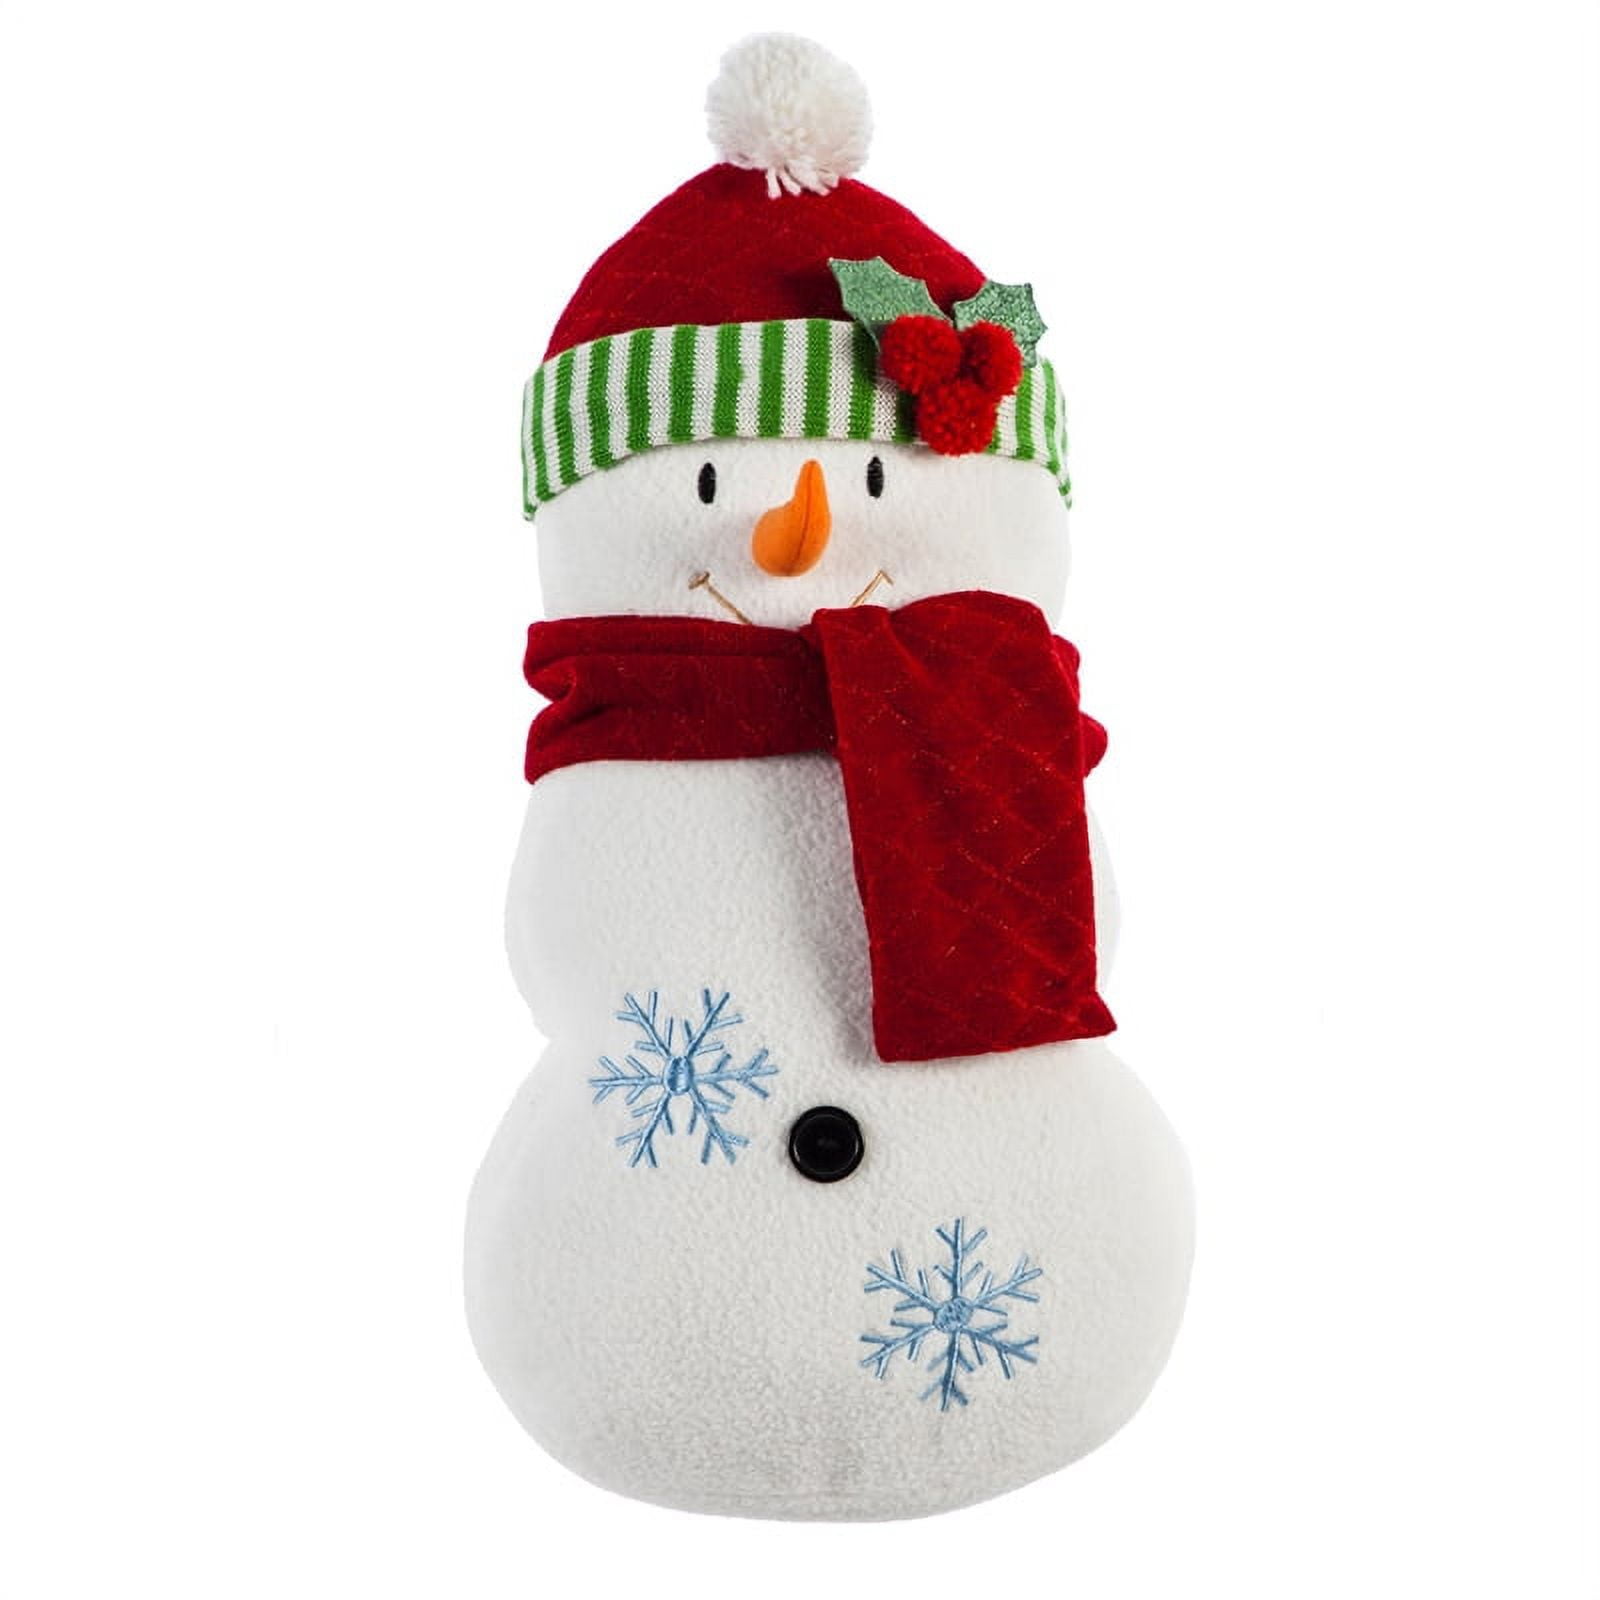 Do You Wanna Build a Snowman? – Practically Perfect Pillows